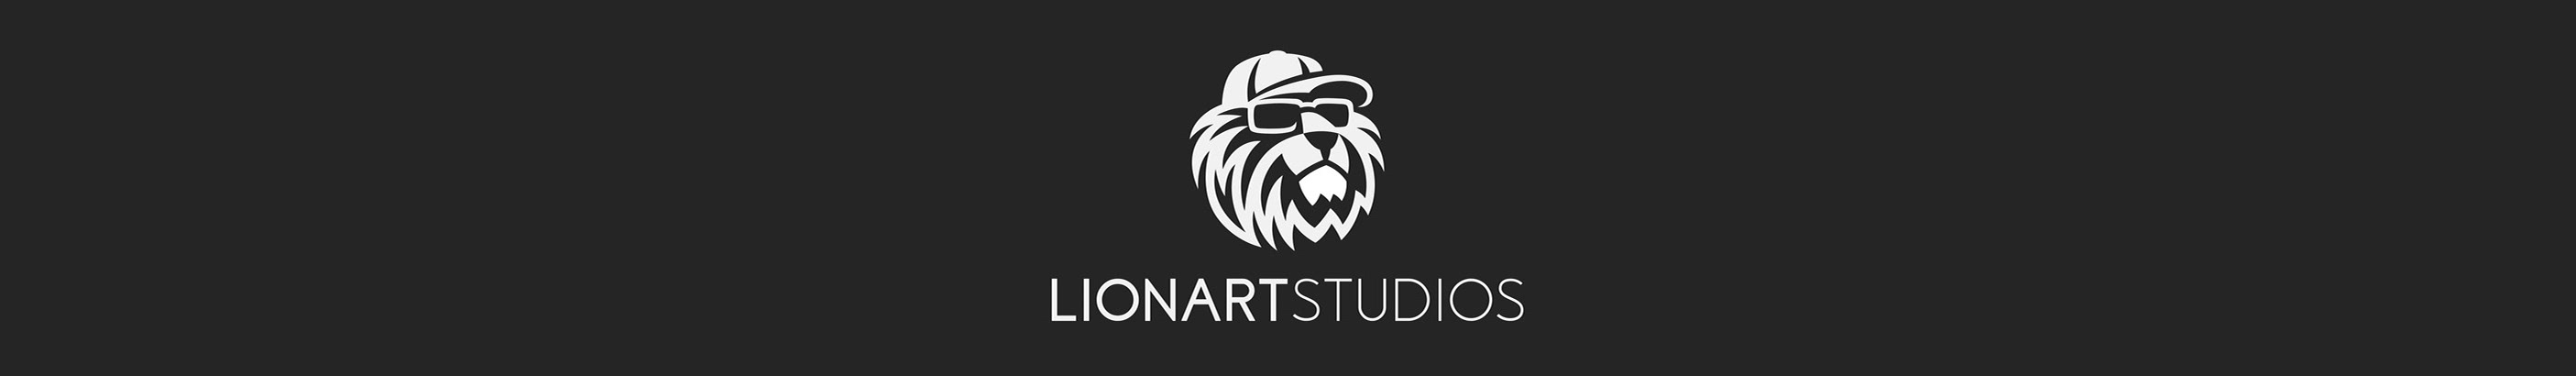 LionArt Studioss profilbanner